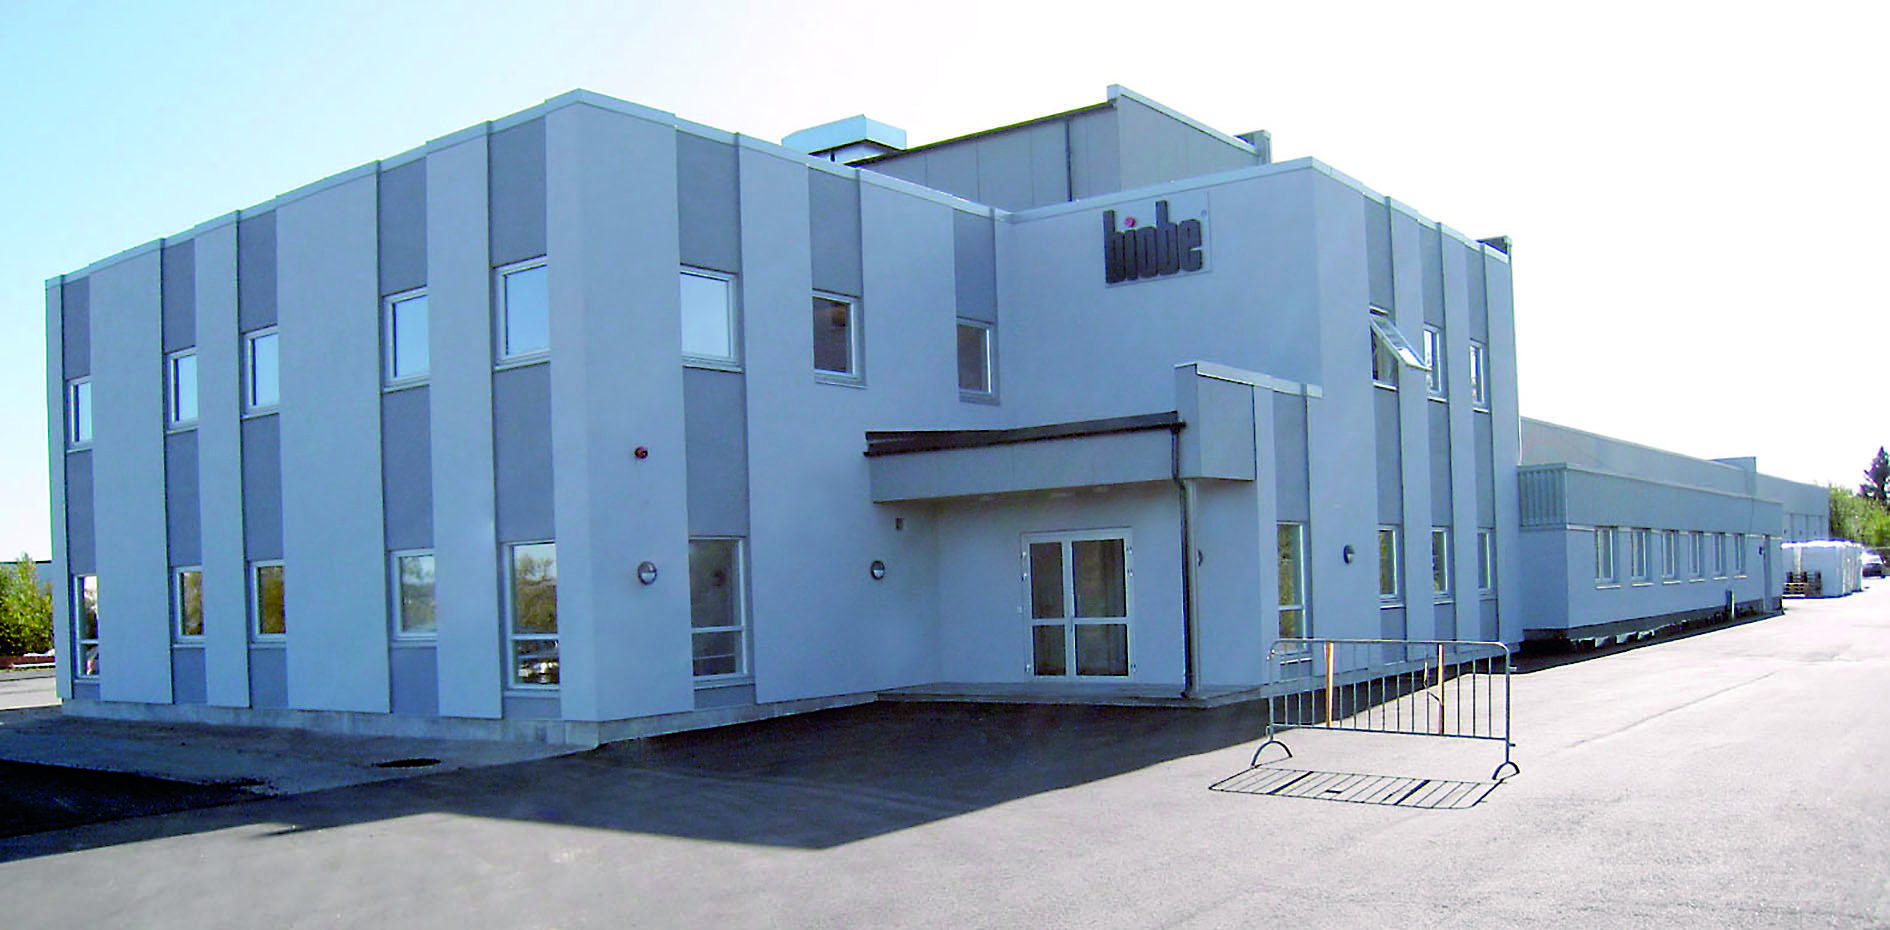 11Biobe AS:n toimisto ja tuotantolaitos Fredrikstadissa, Norjassa. 